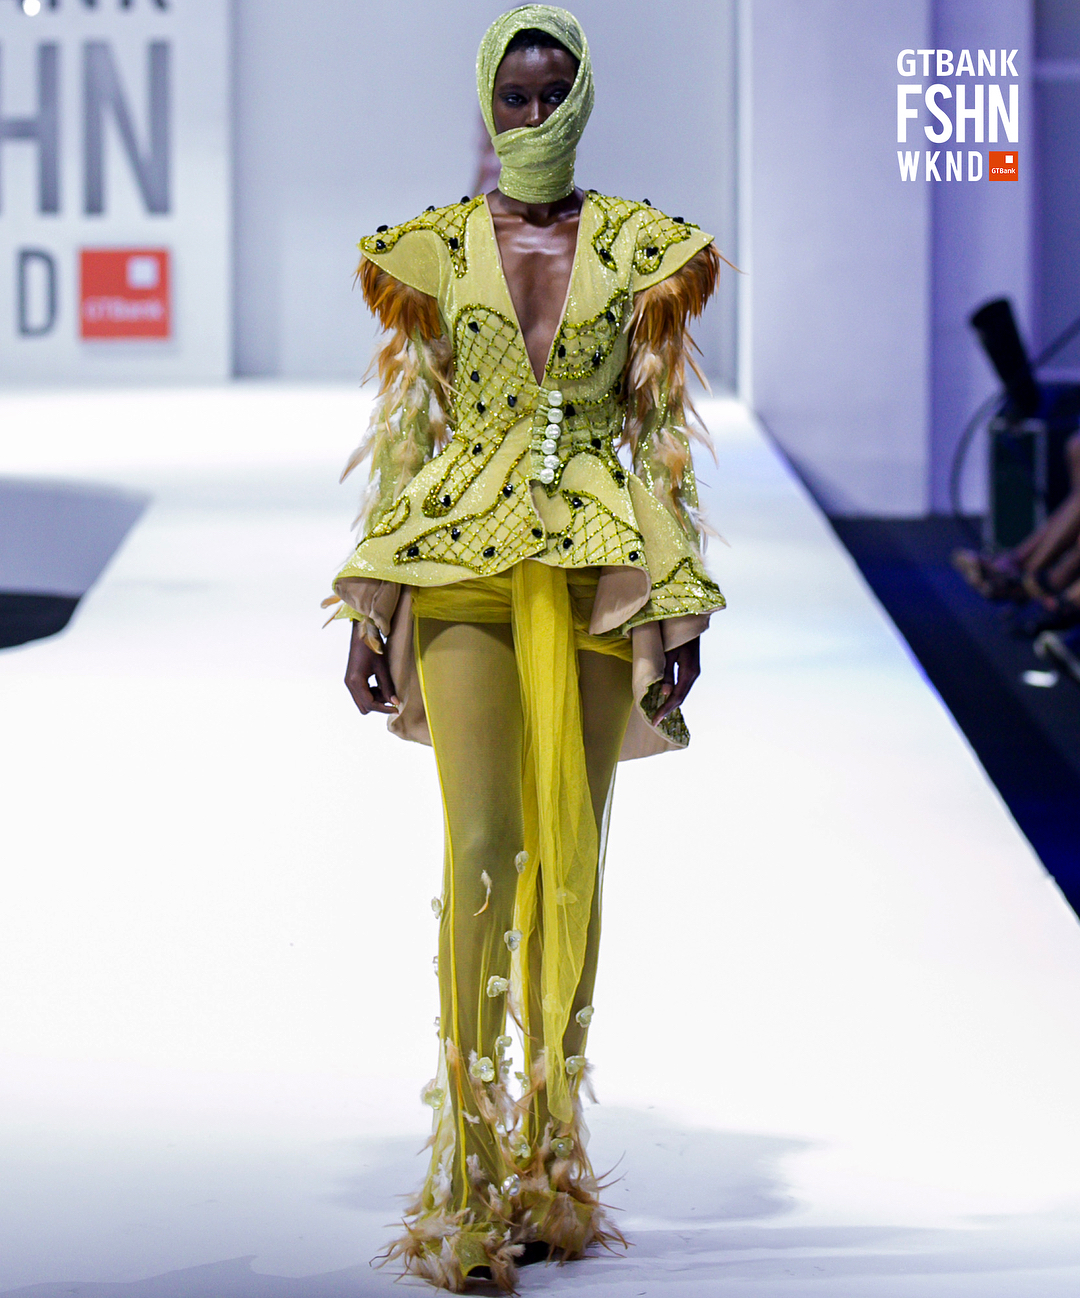 GTBank Fashion Weekend: Mazzi's Day 2 Review